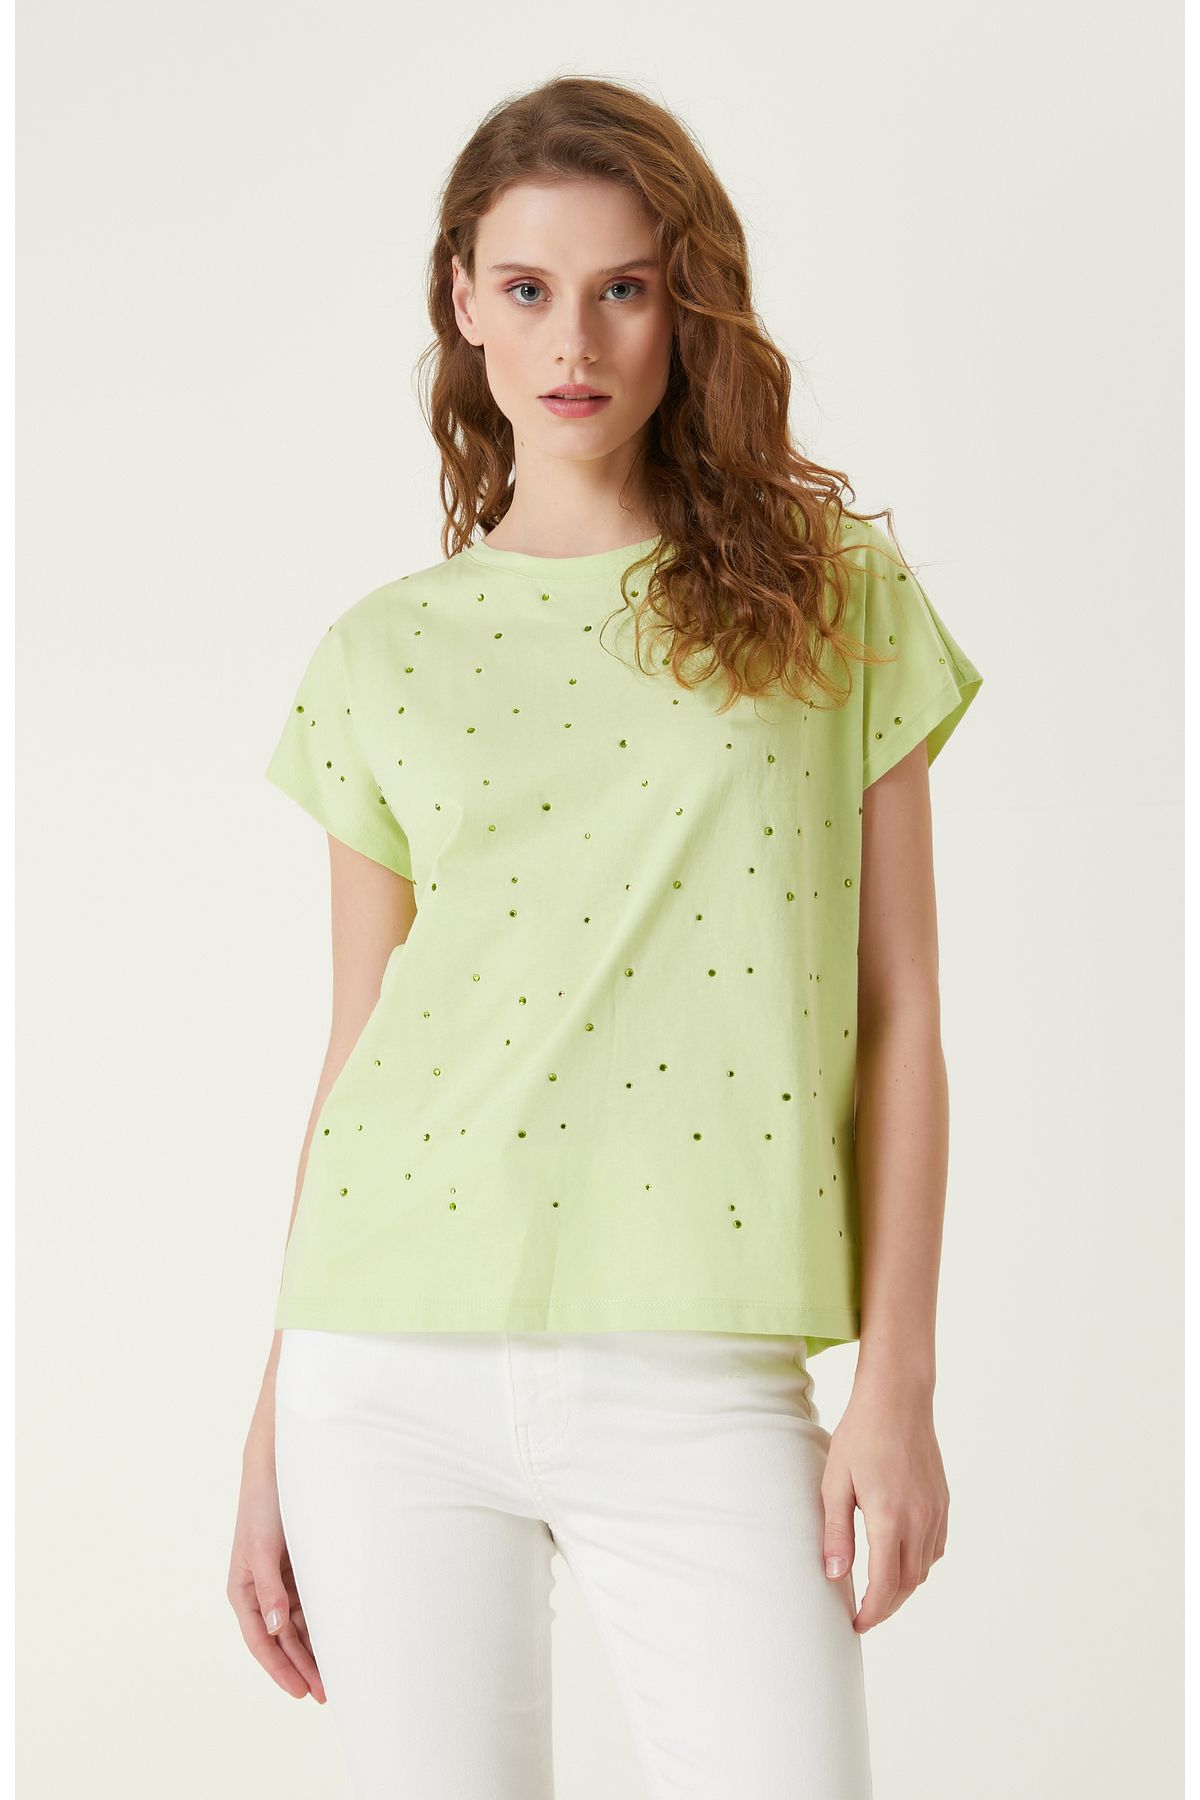 Network Fıstık Yeşili T-shirt